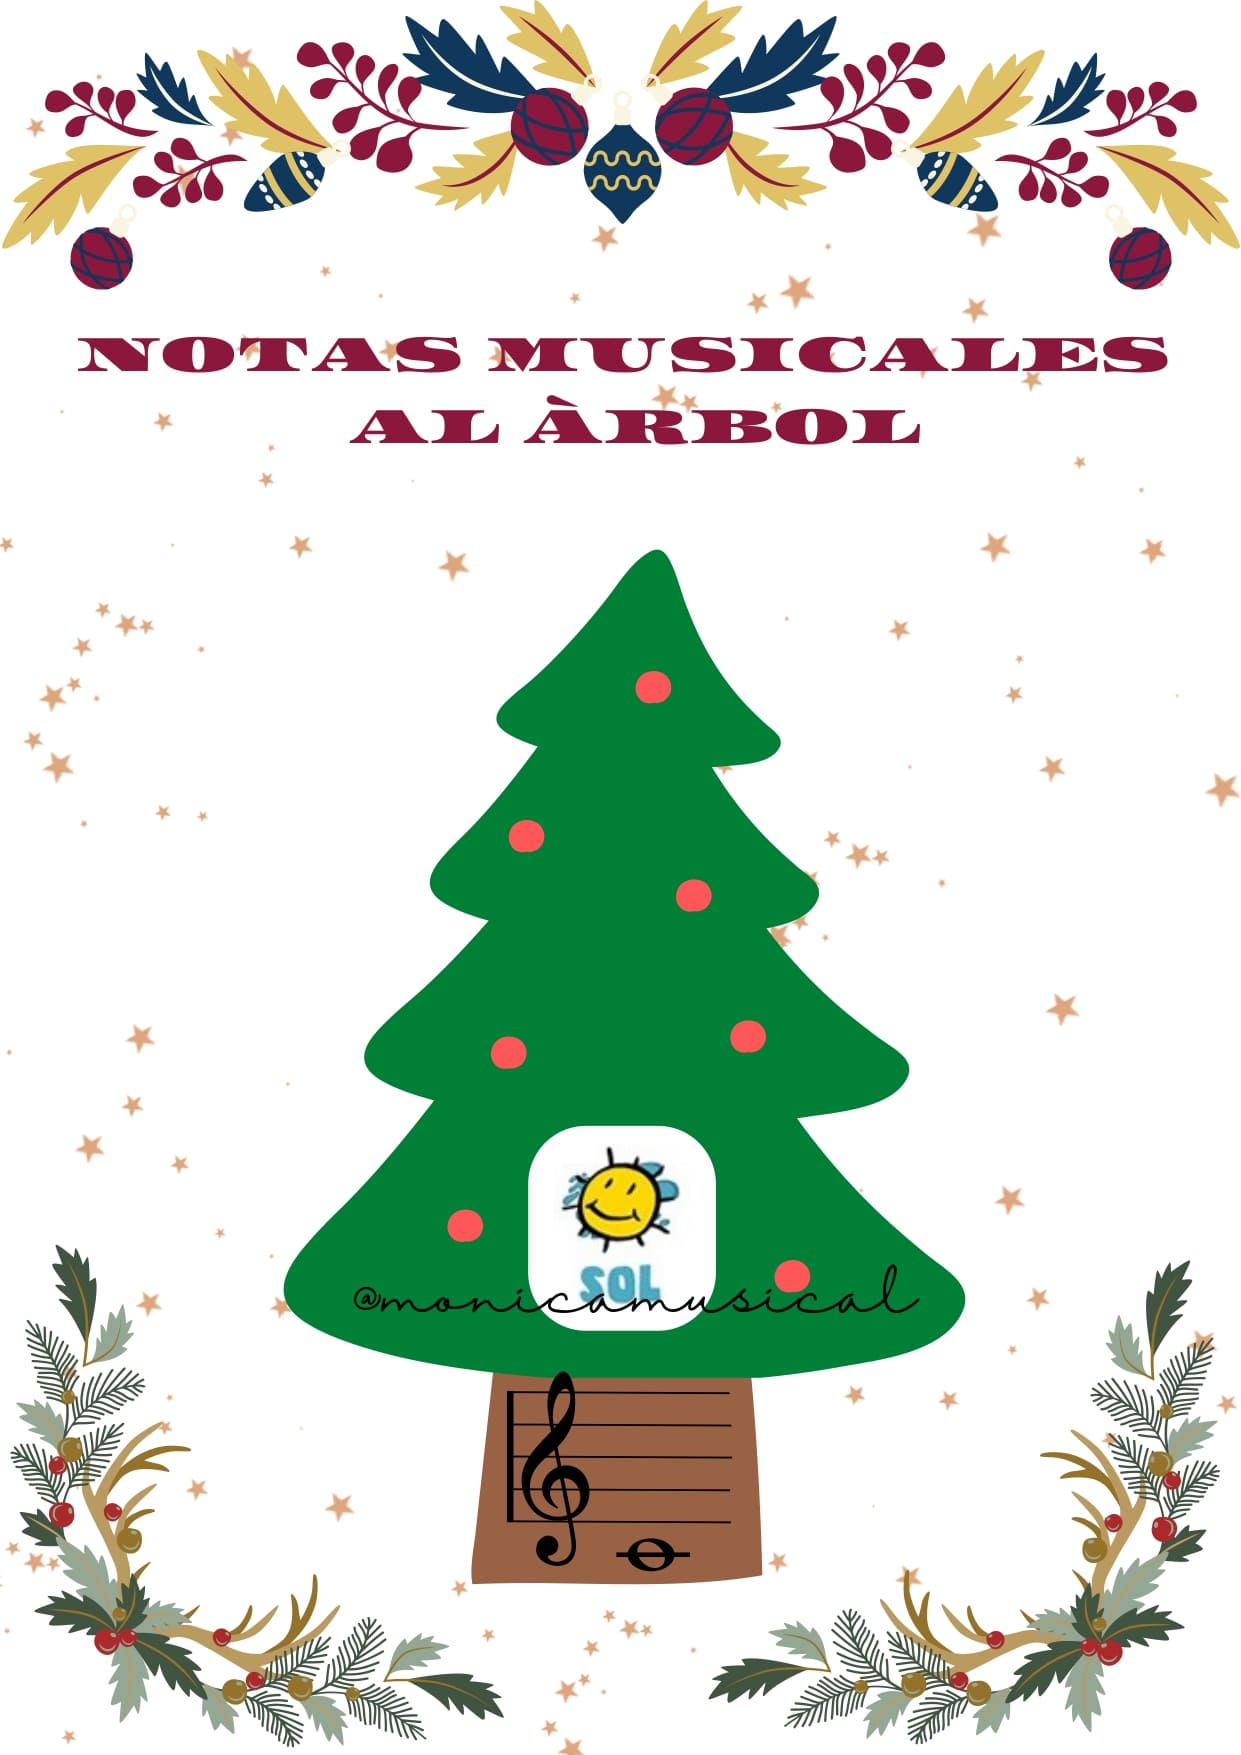 NOTAS MUSICALES MUSICAEDUCA AL ÁRBOL